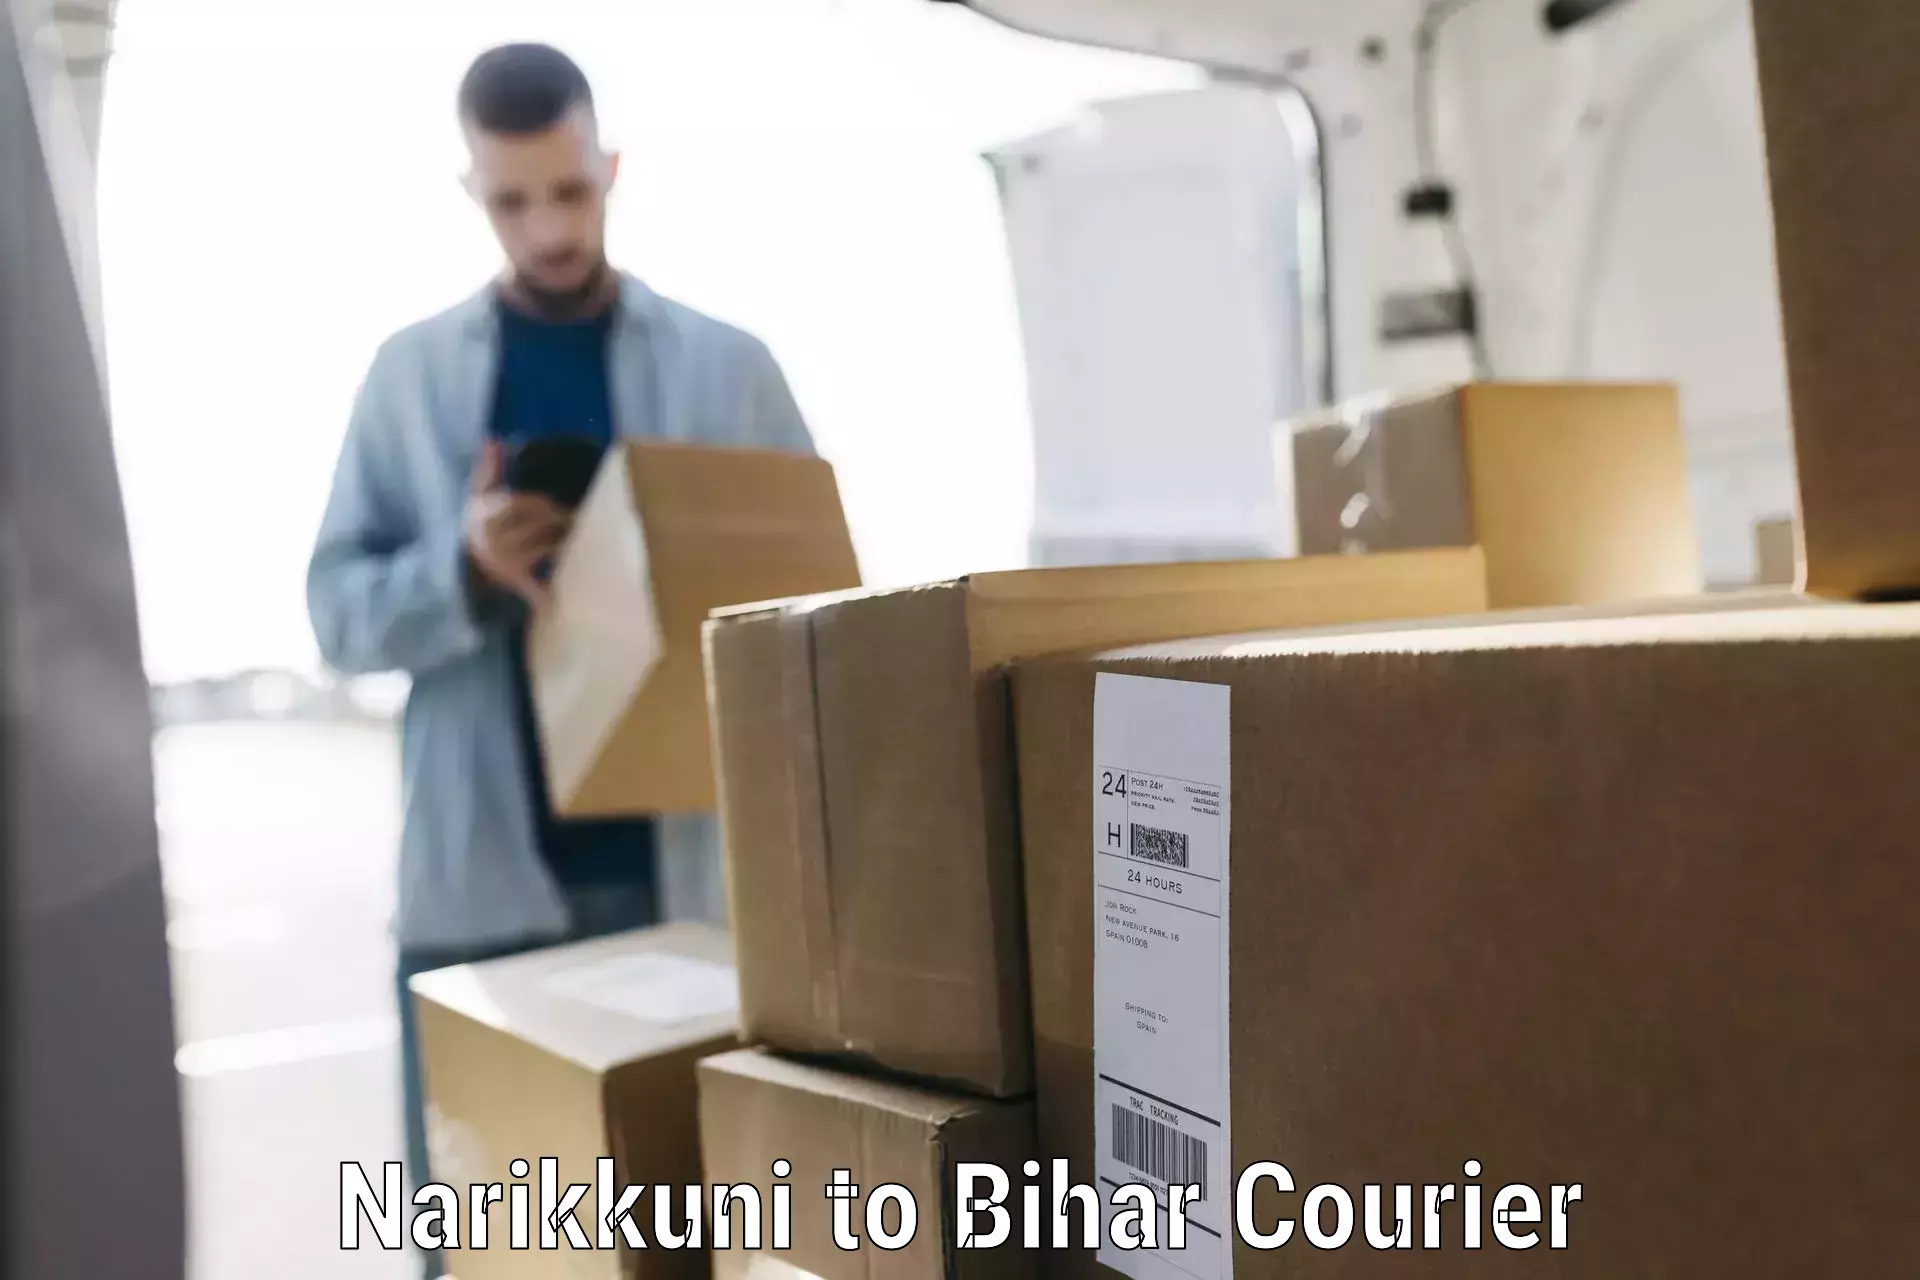 Luggage delivery network Narikkuni to Sugauna